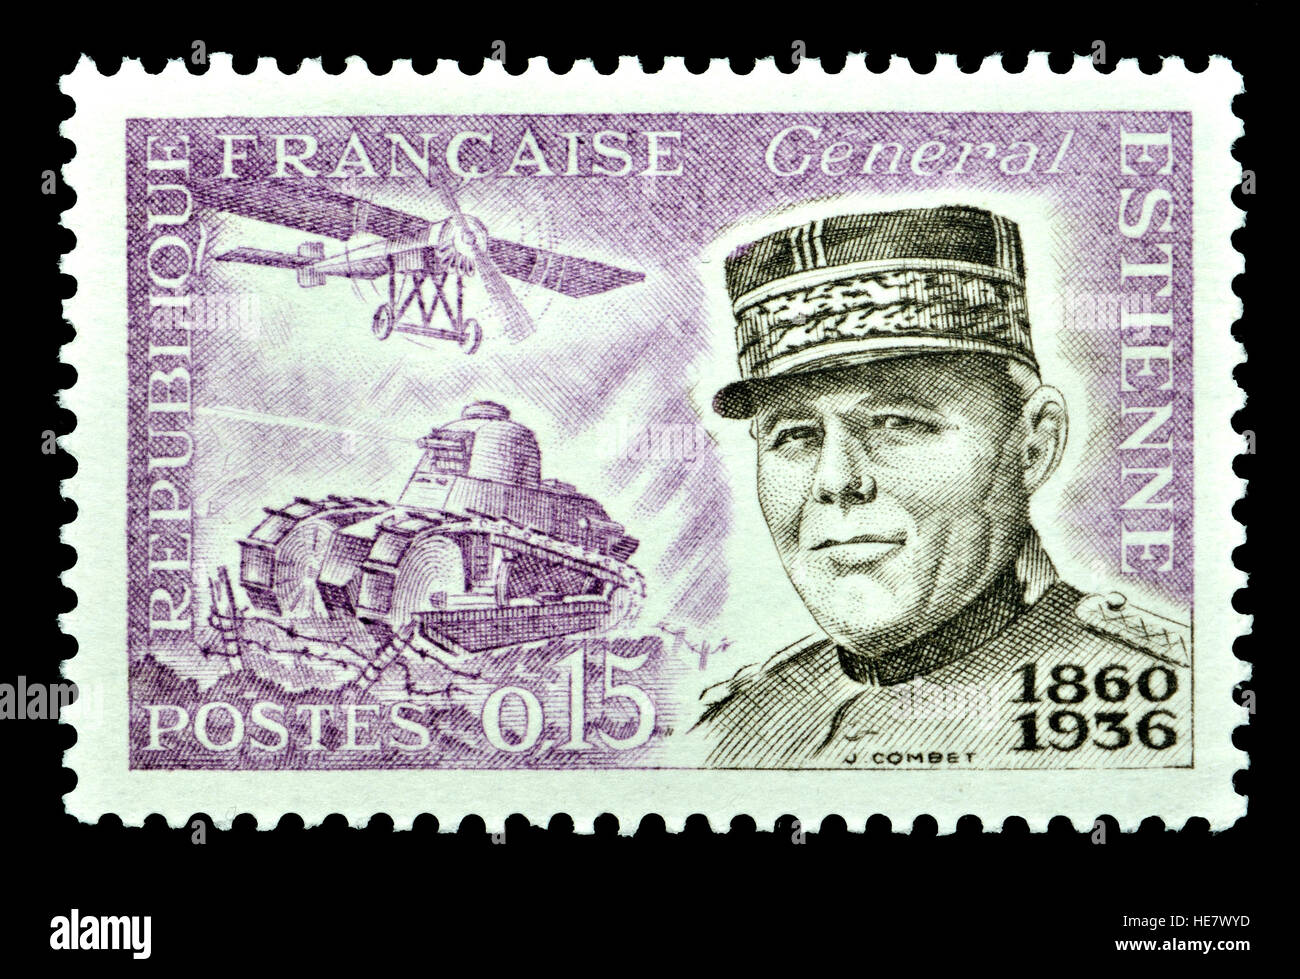 Il francese francobollo (1960) : Jean Baptiste Eugène Estienne (1860 - 1936) generale francese di artiglieria e uno specialista di ingegneria militare Foto Stock